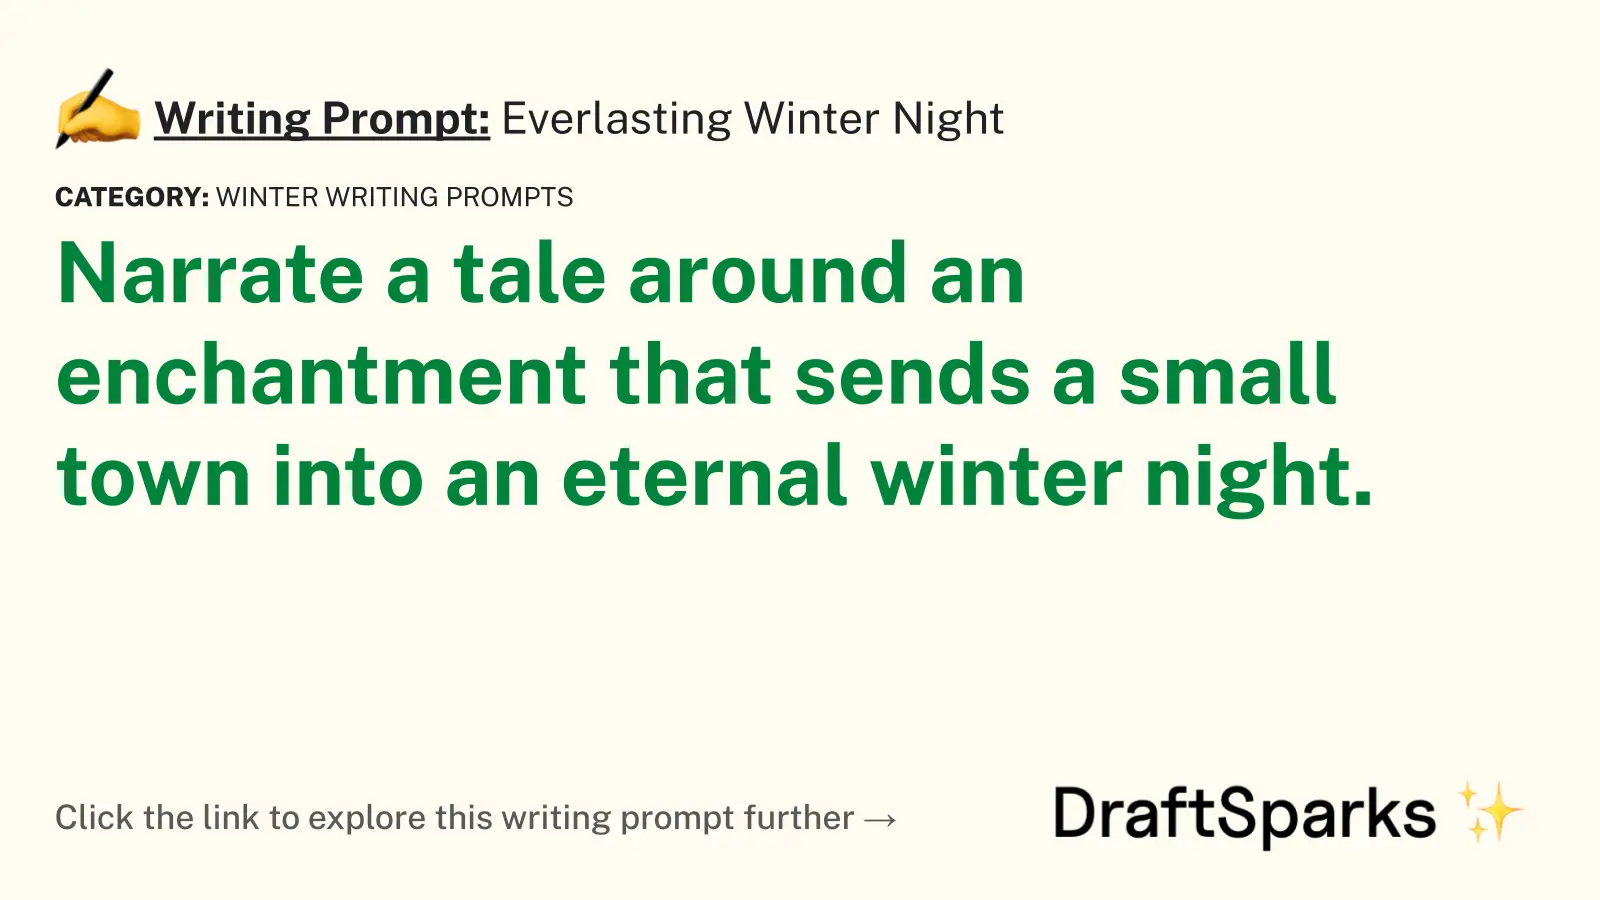 Everlasting Winter Night